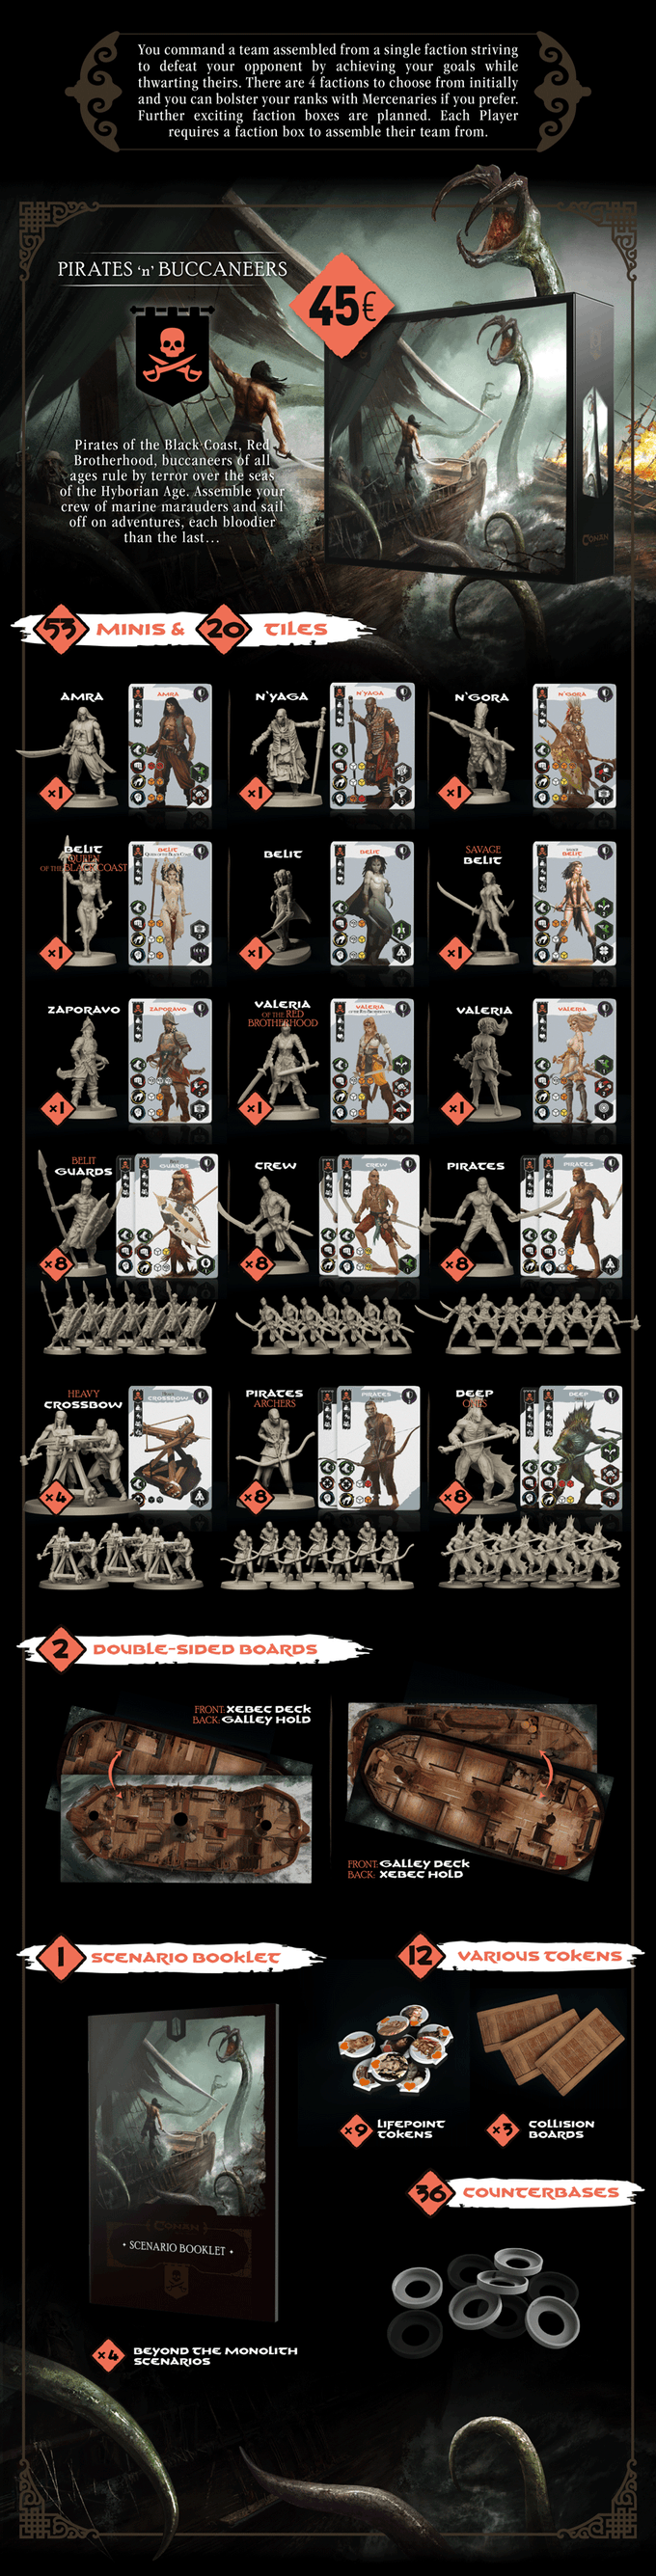 Kickstarter W Tiles 32mm Fanstasy Camel Monolith Conan Board Game NEW 